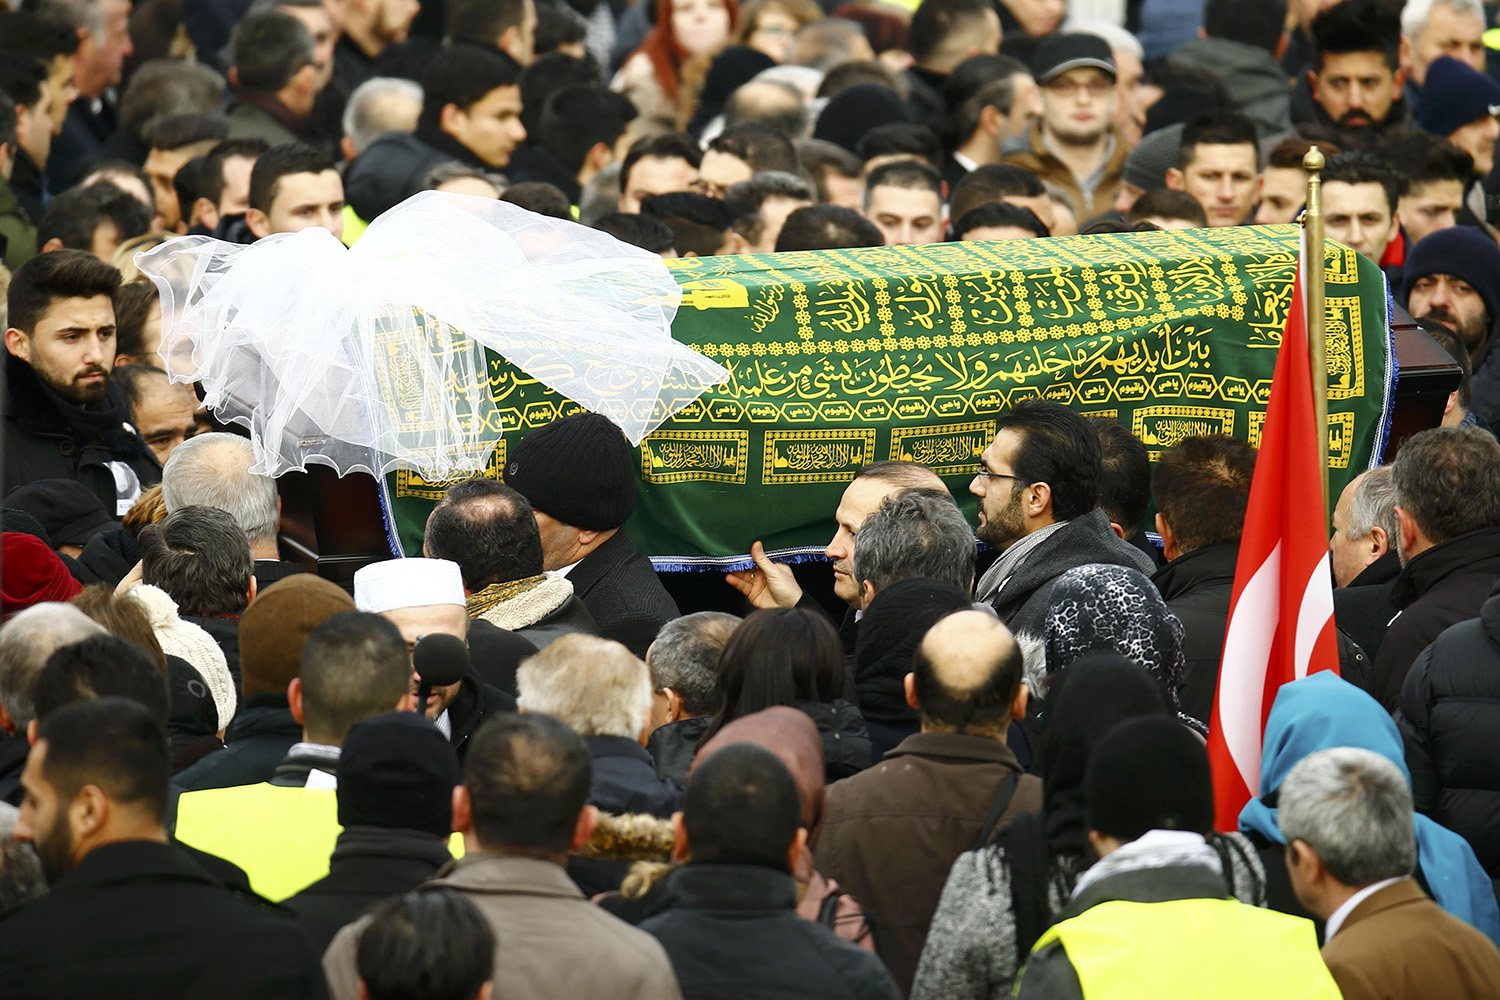 El funeral de Tugce Albayrak en Alemania ha estado muy concurrido